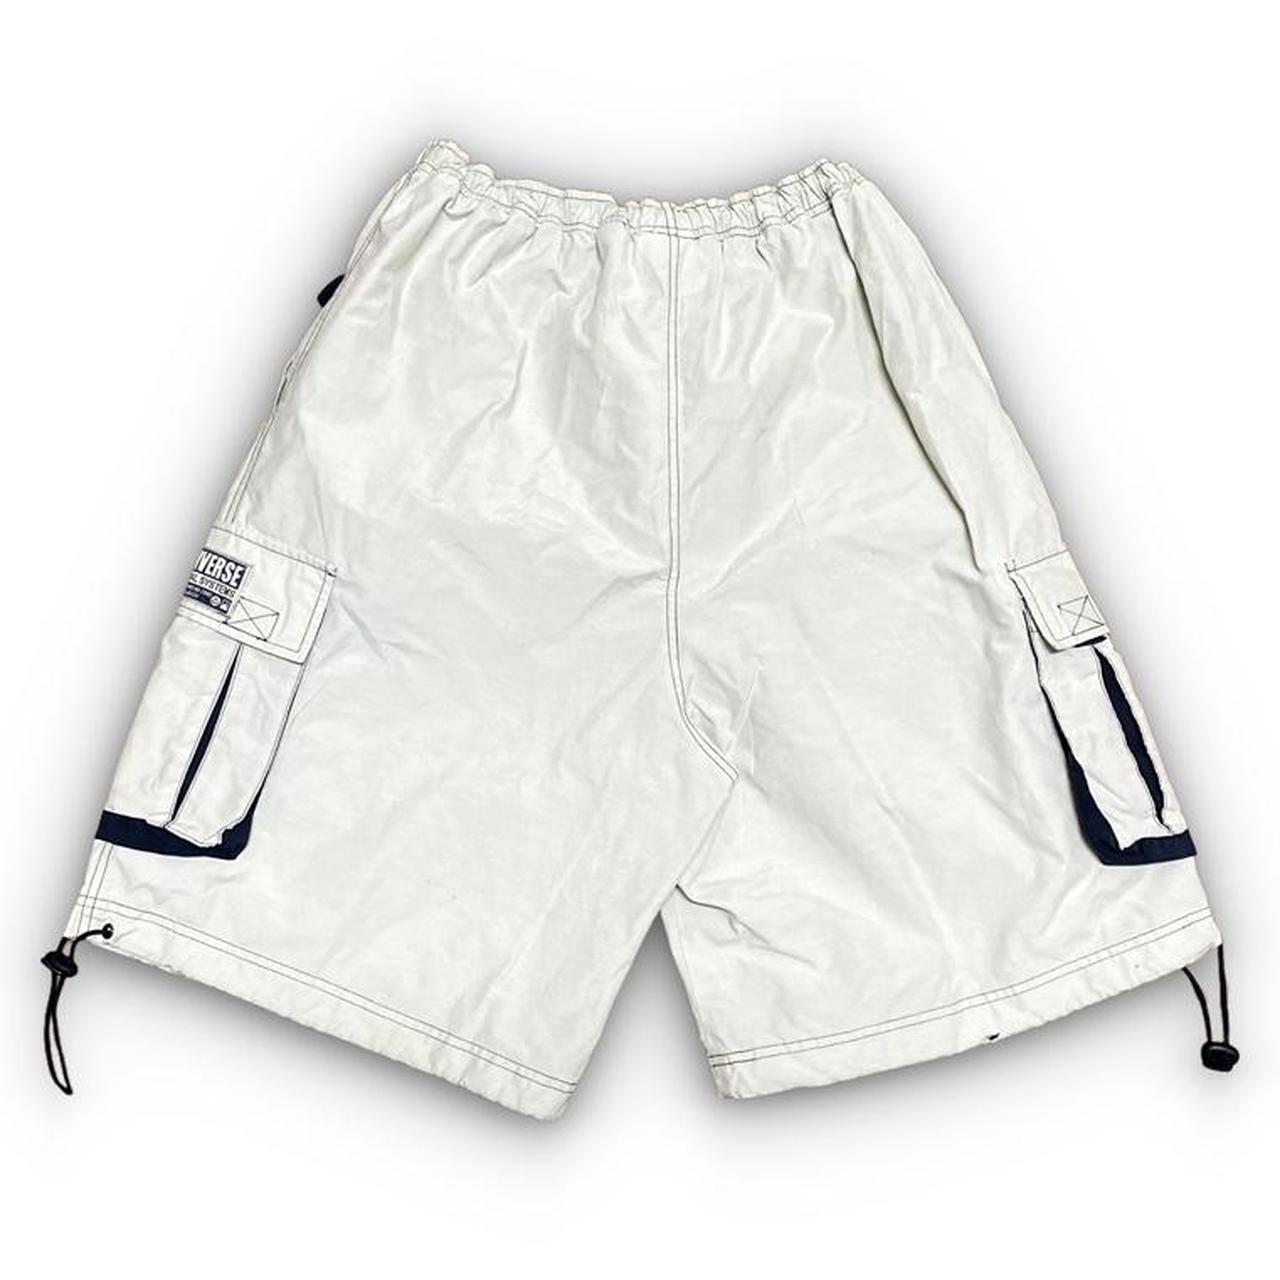 Converse Men's Grey and Navy Shorts (3)